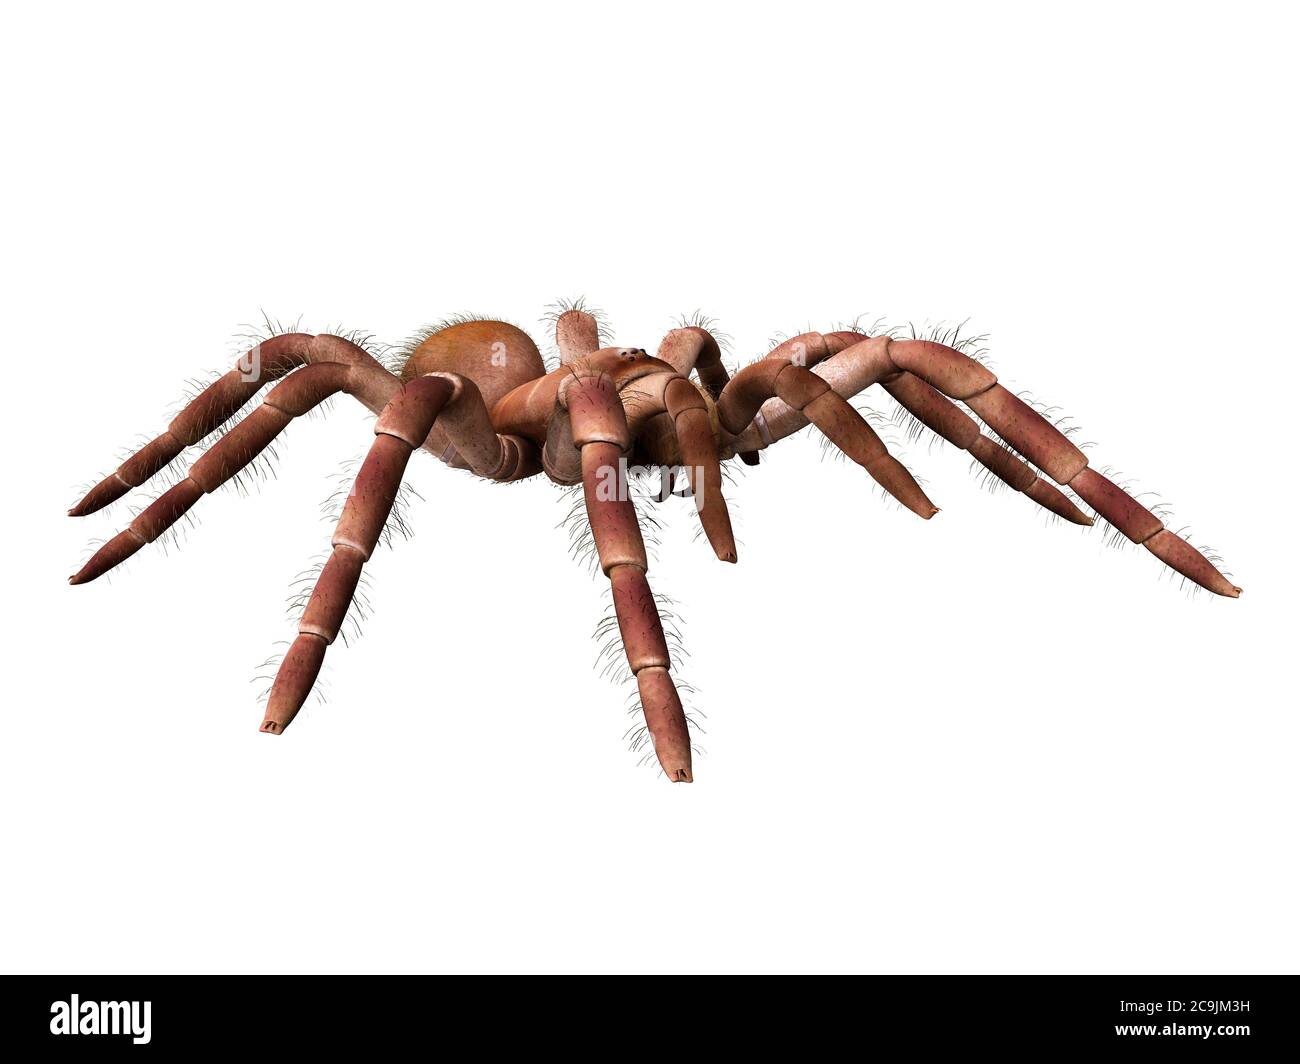 Goliath birdeater tarantula (Theraphosa blondi), computer illustration. Stock Photo